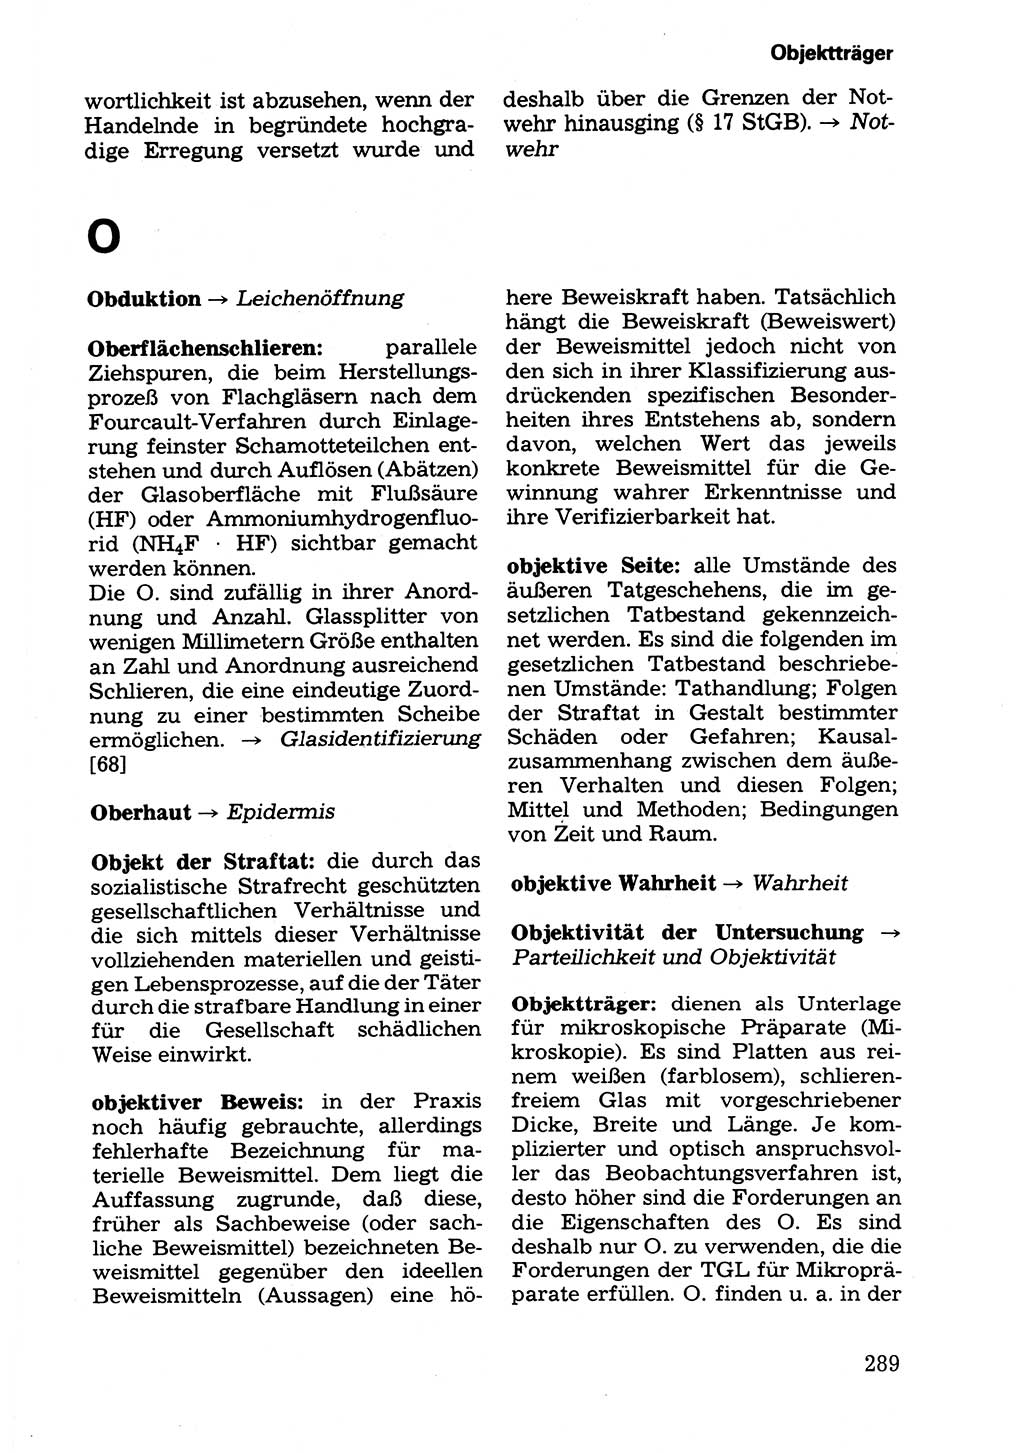 Wörterbuch der sozialistischen Kriminalistik [Deutsche Demokratische Republik (DDR)] 1981, Seite 289 (Wb. soz. Krim. DDR 1981, S. 289)